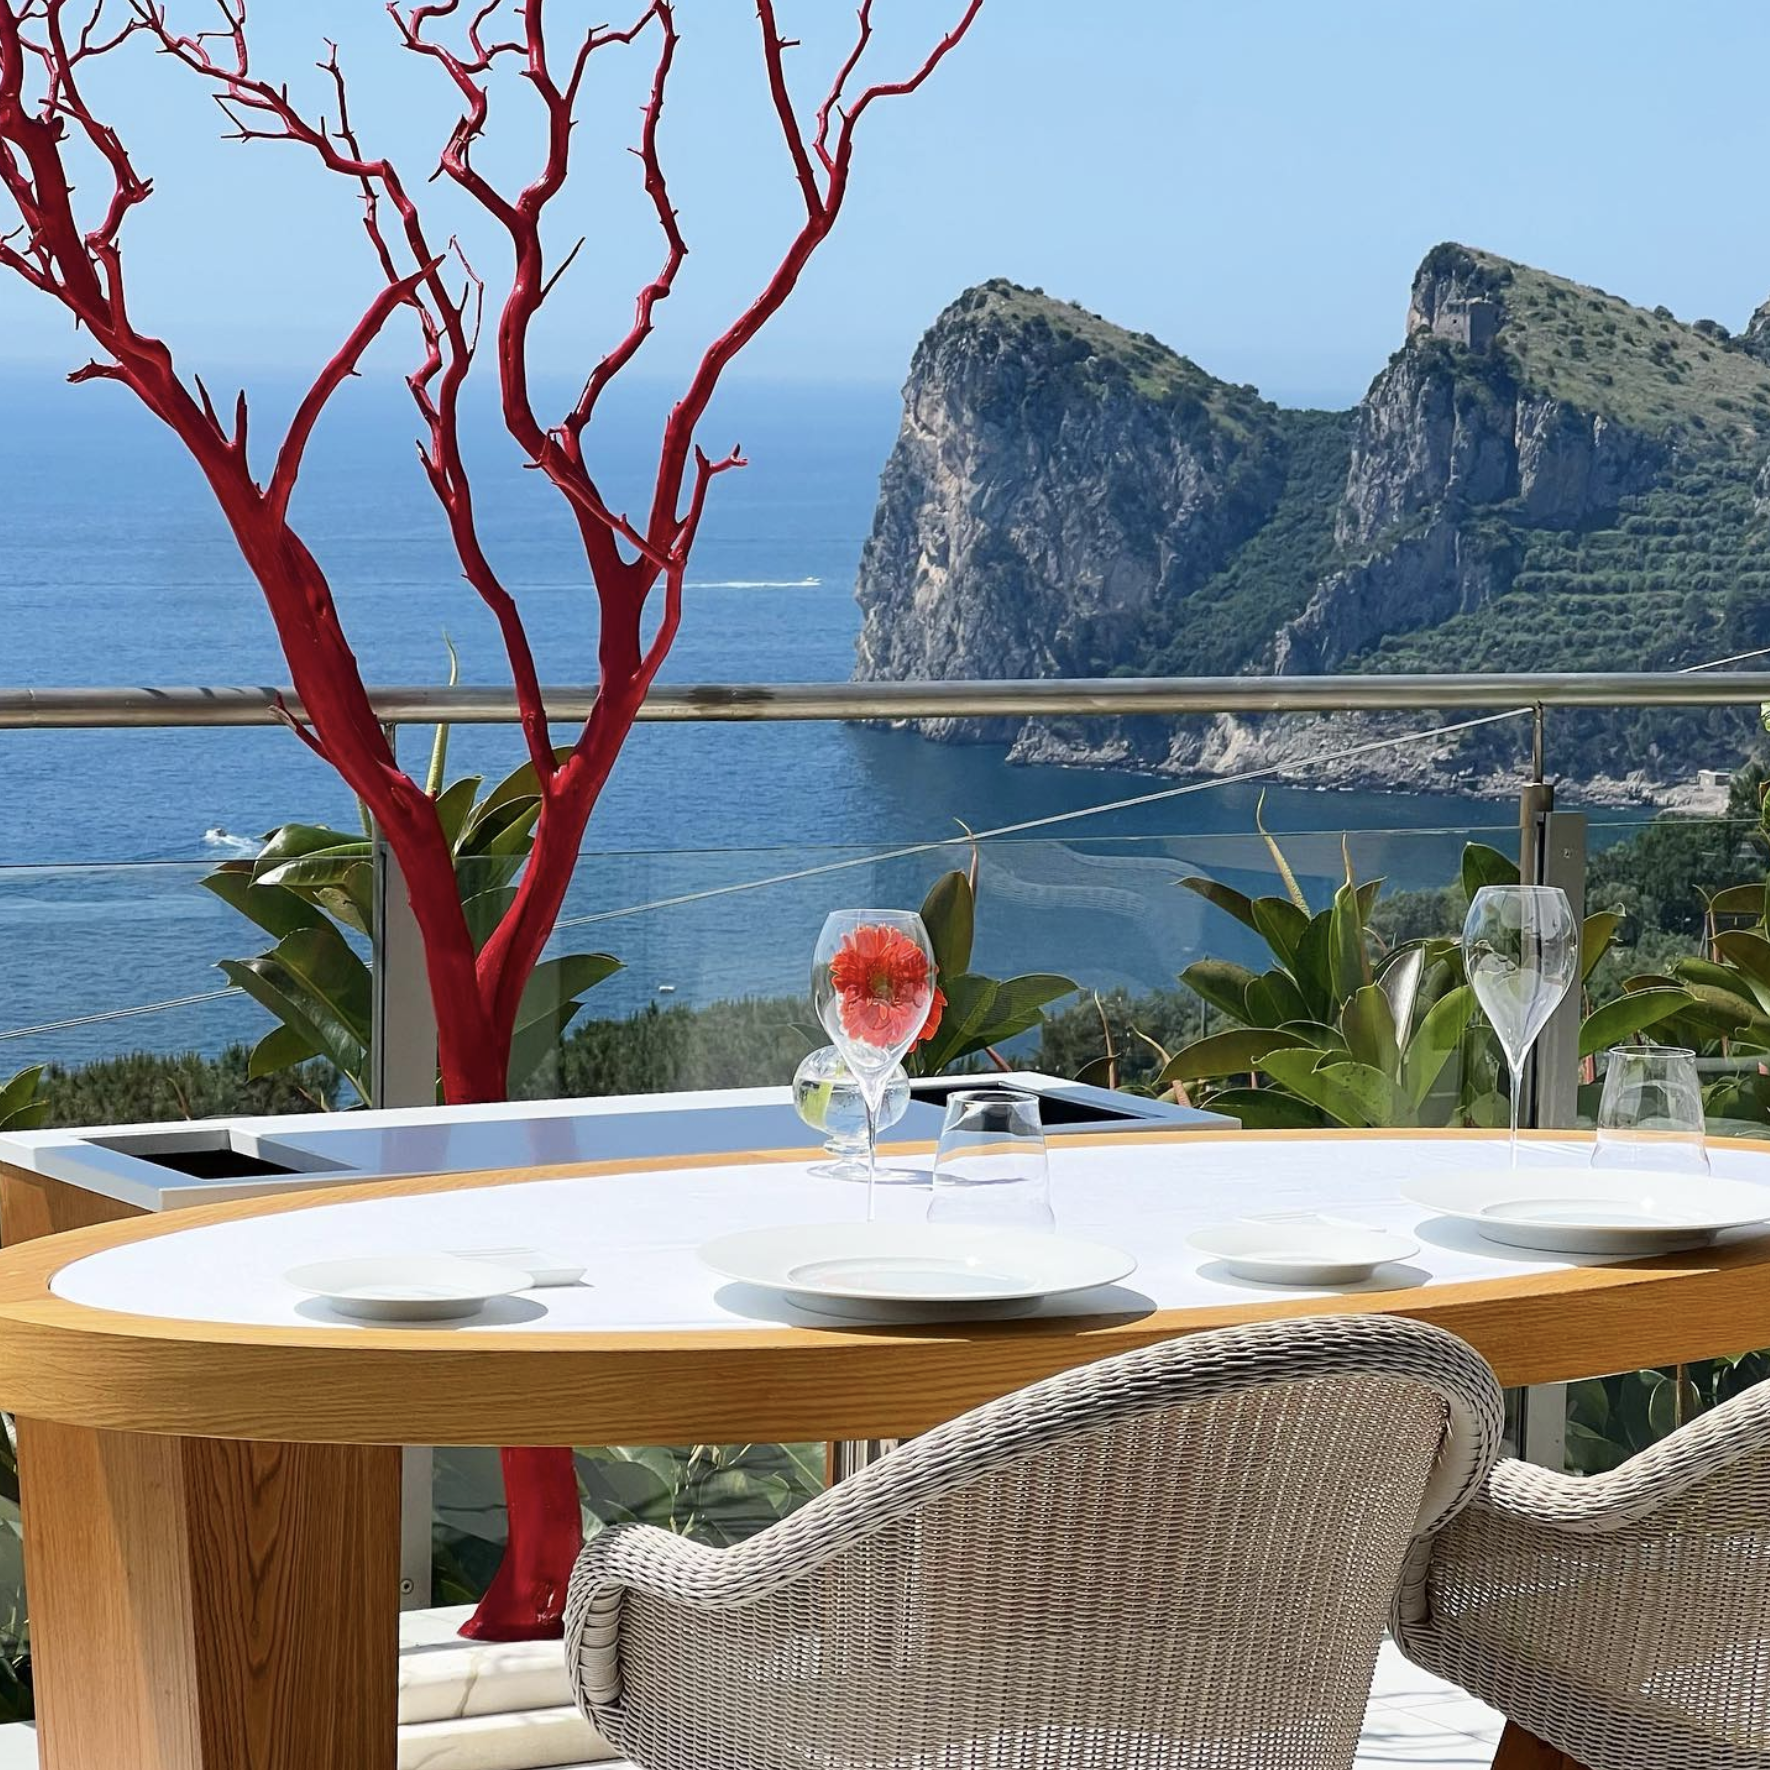 Mangiare sulla Costiera Sorrentina: i migliori ristoranti da provare